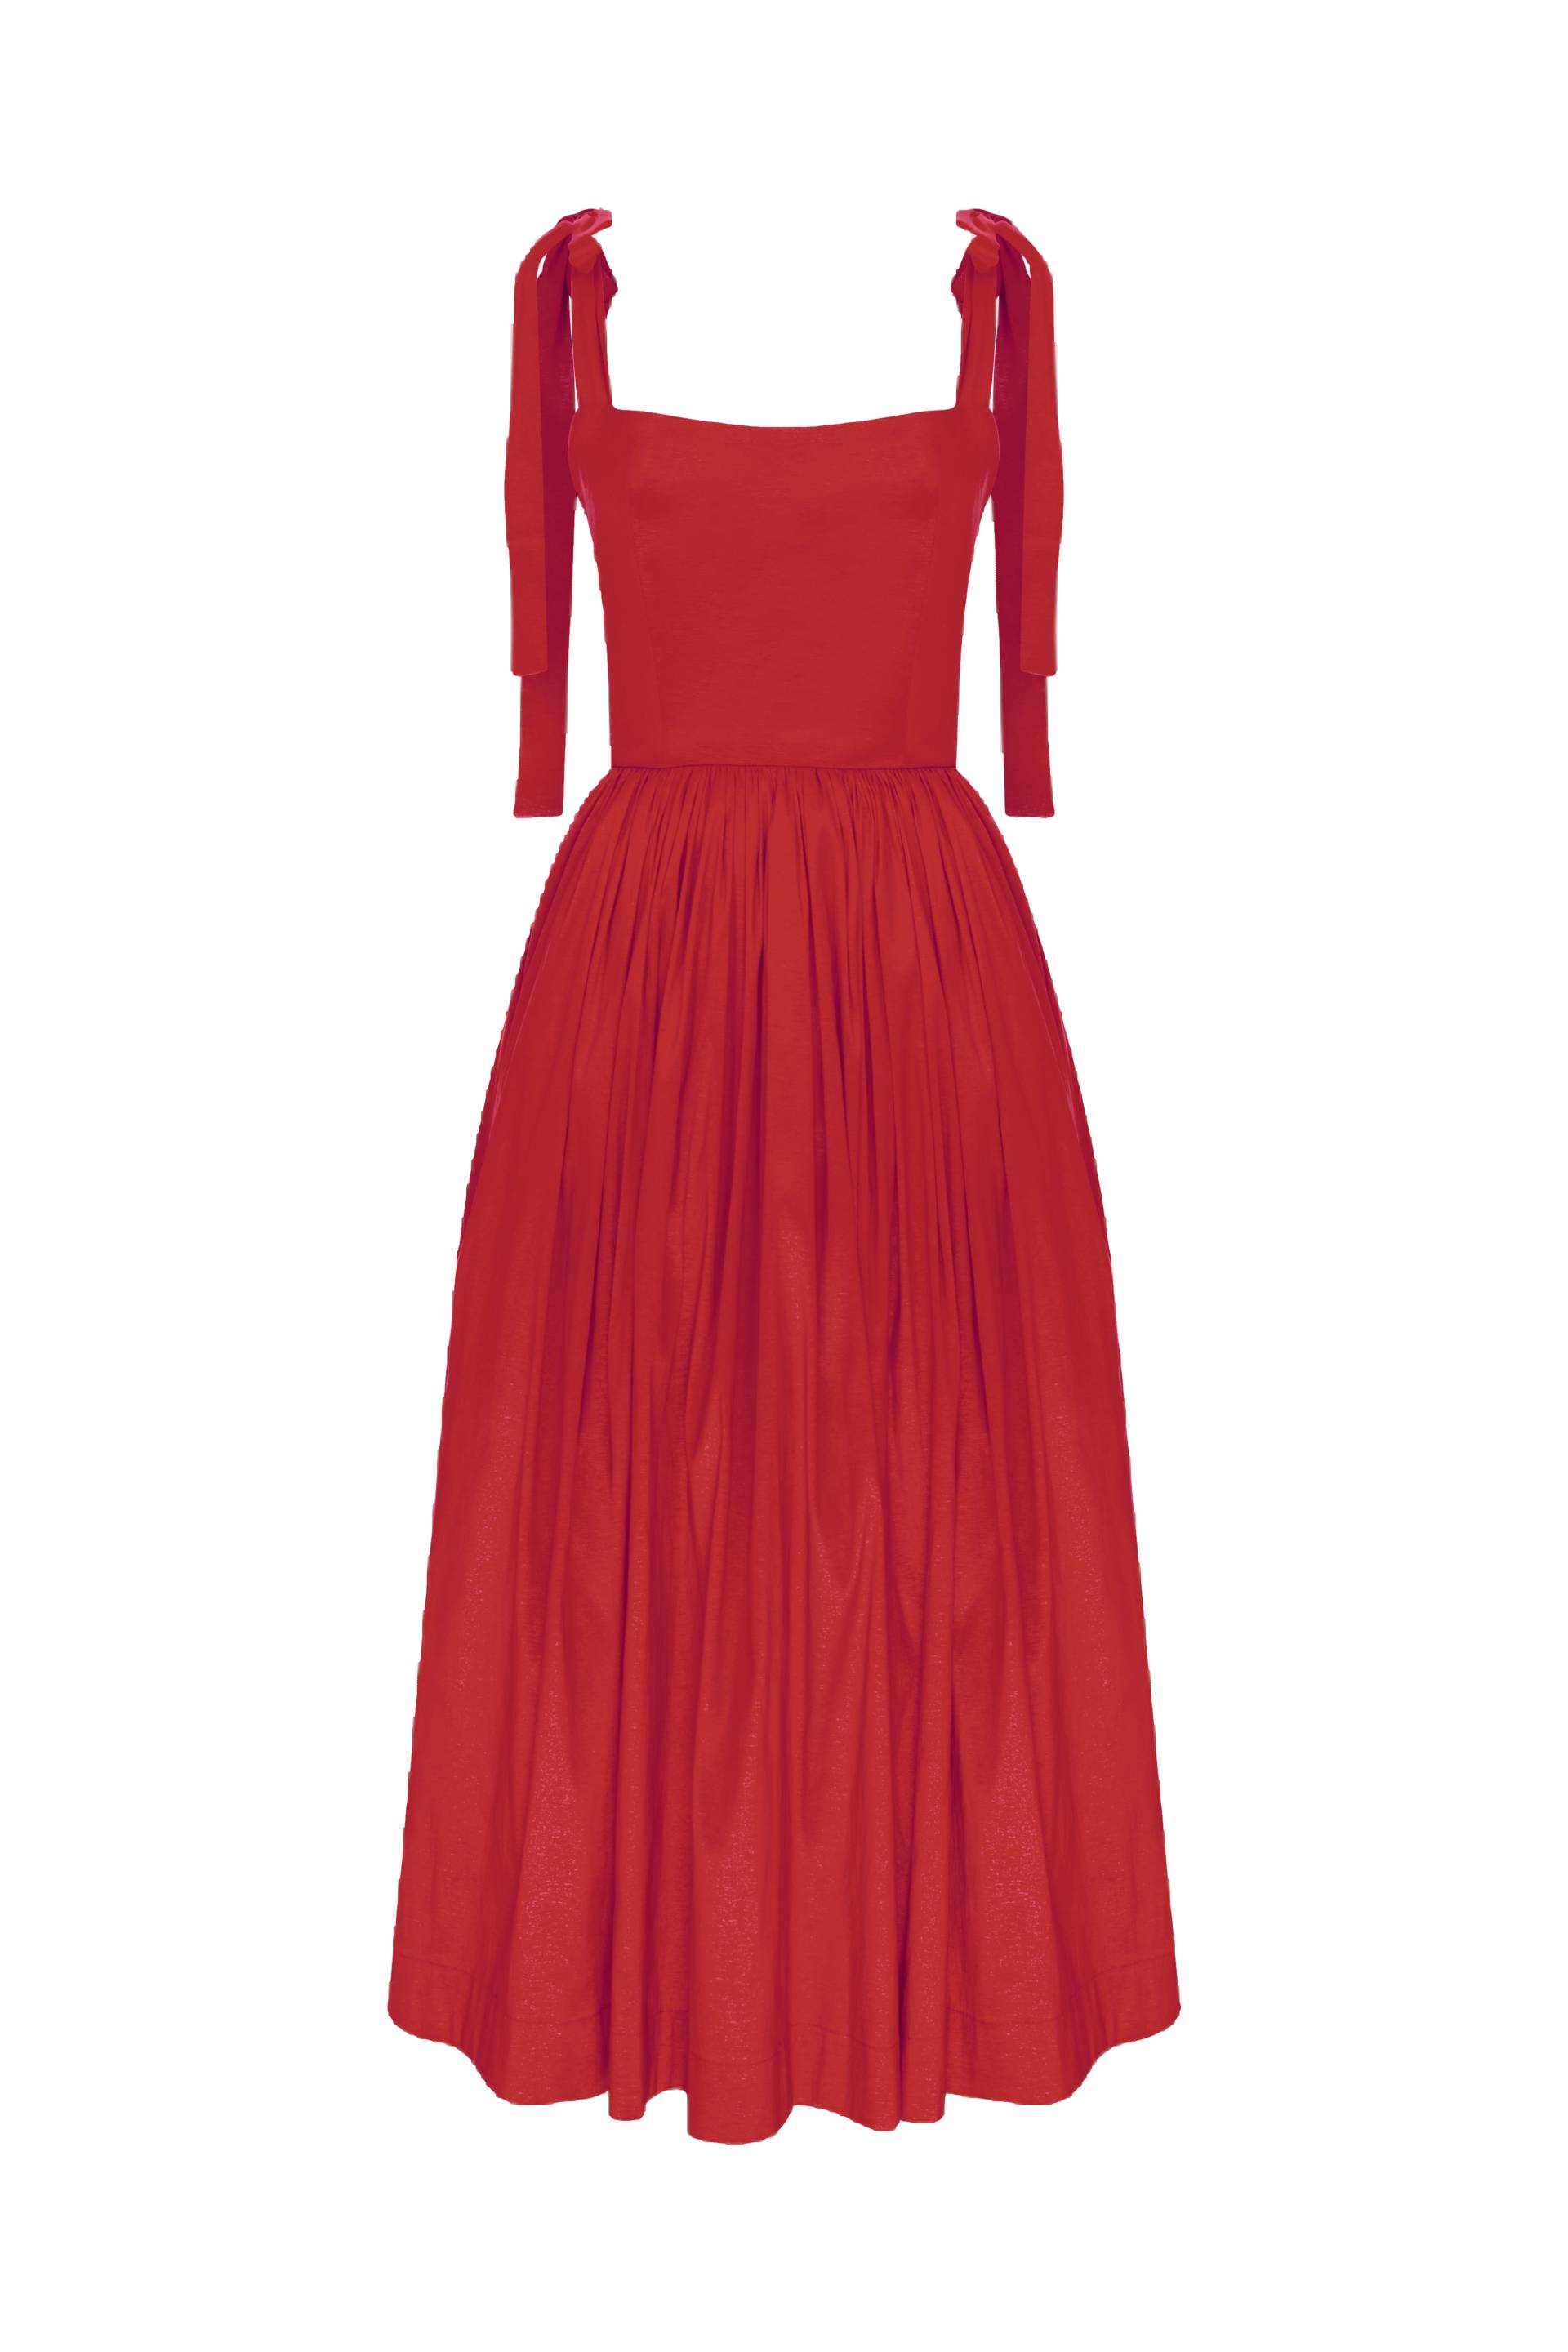 Sibby Midi Dress in Rouge von Nazli Ceren